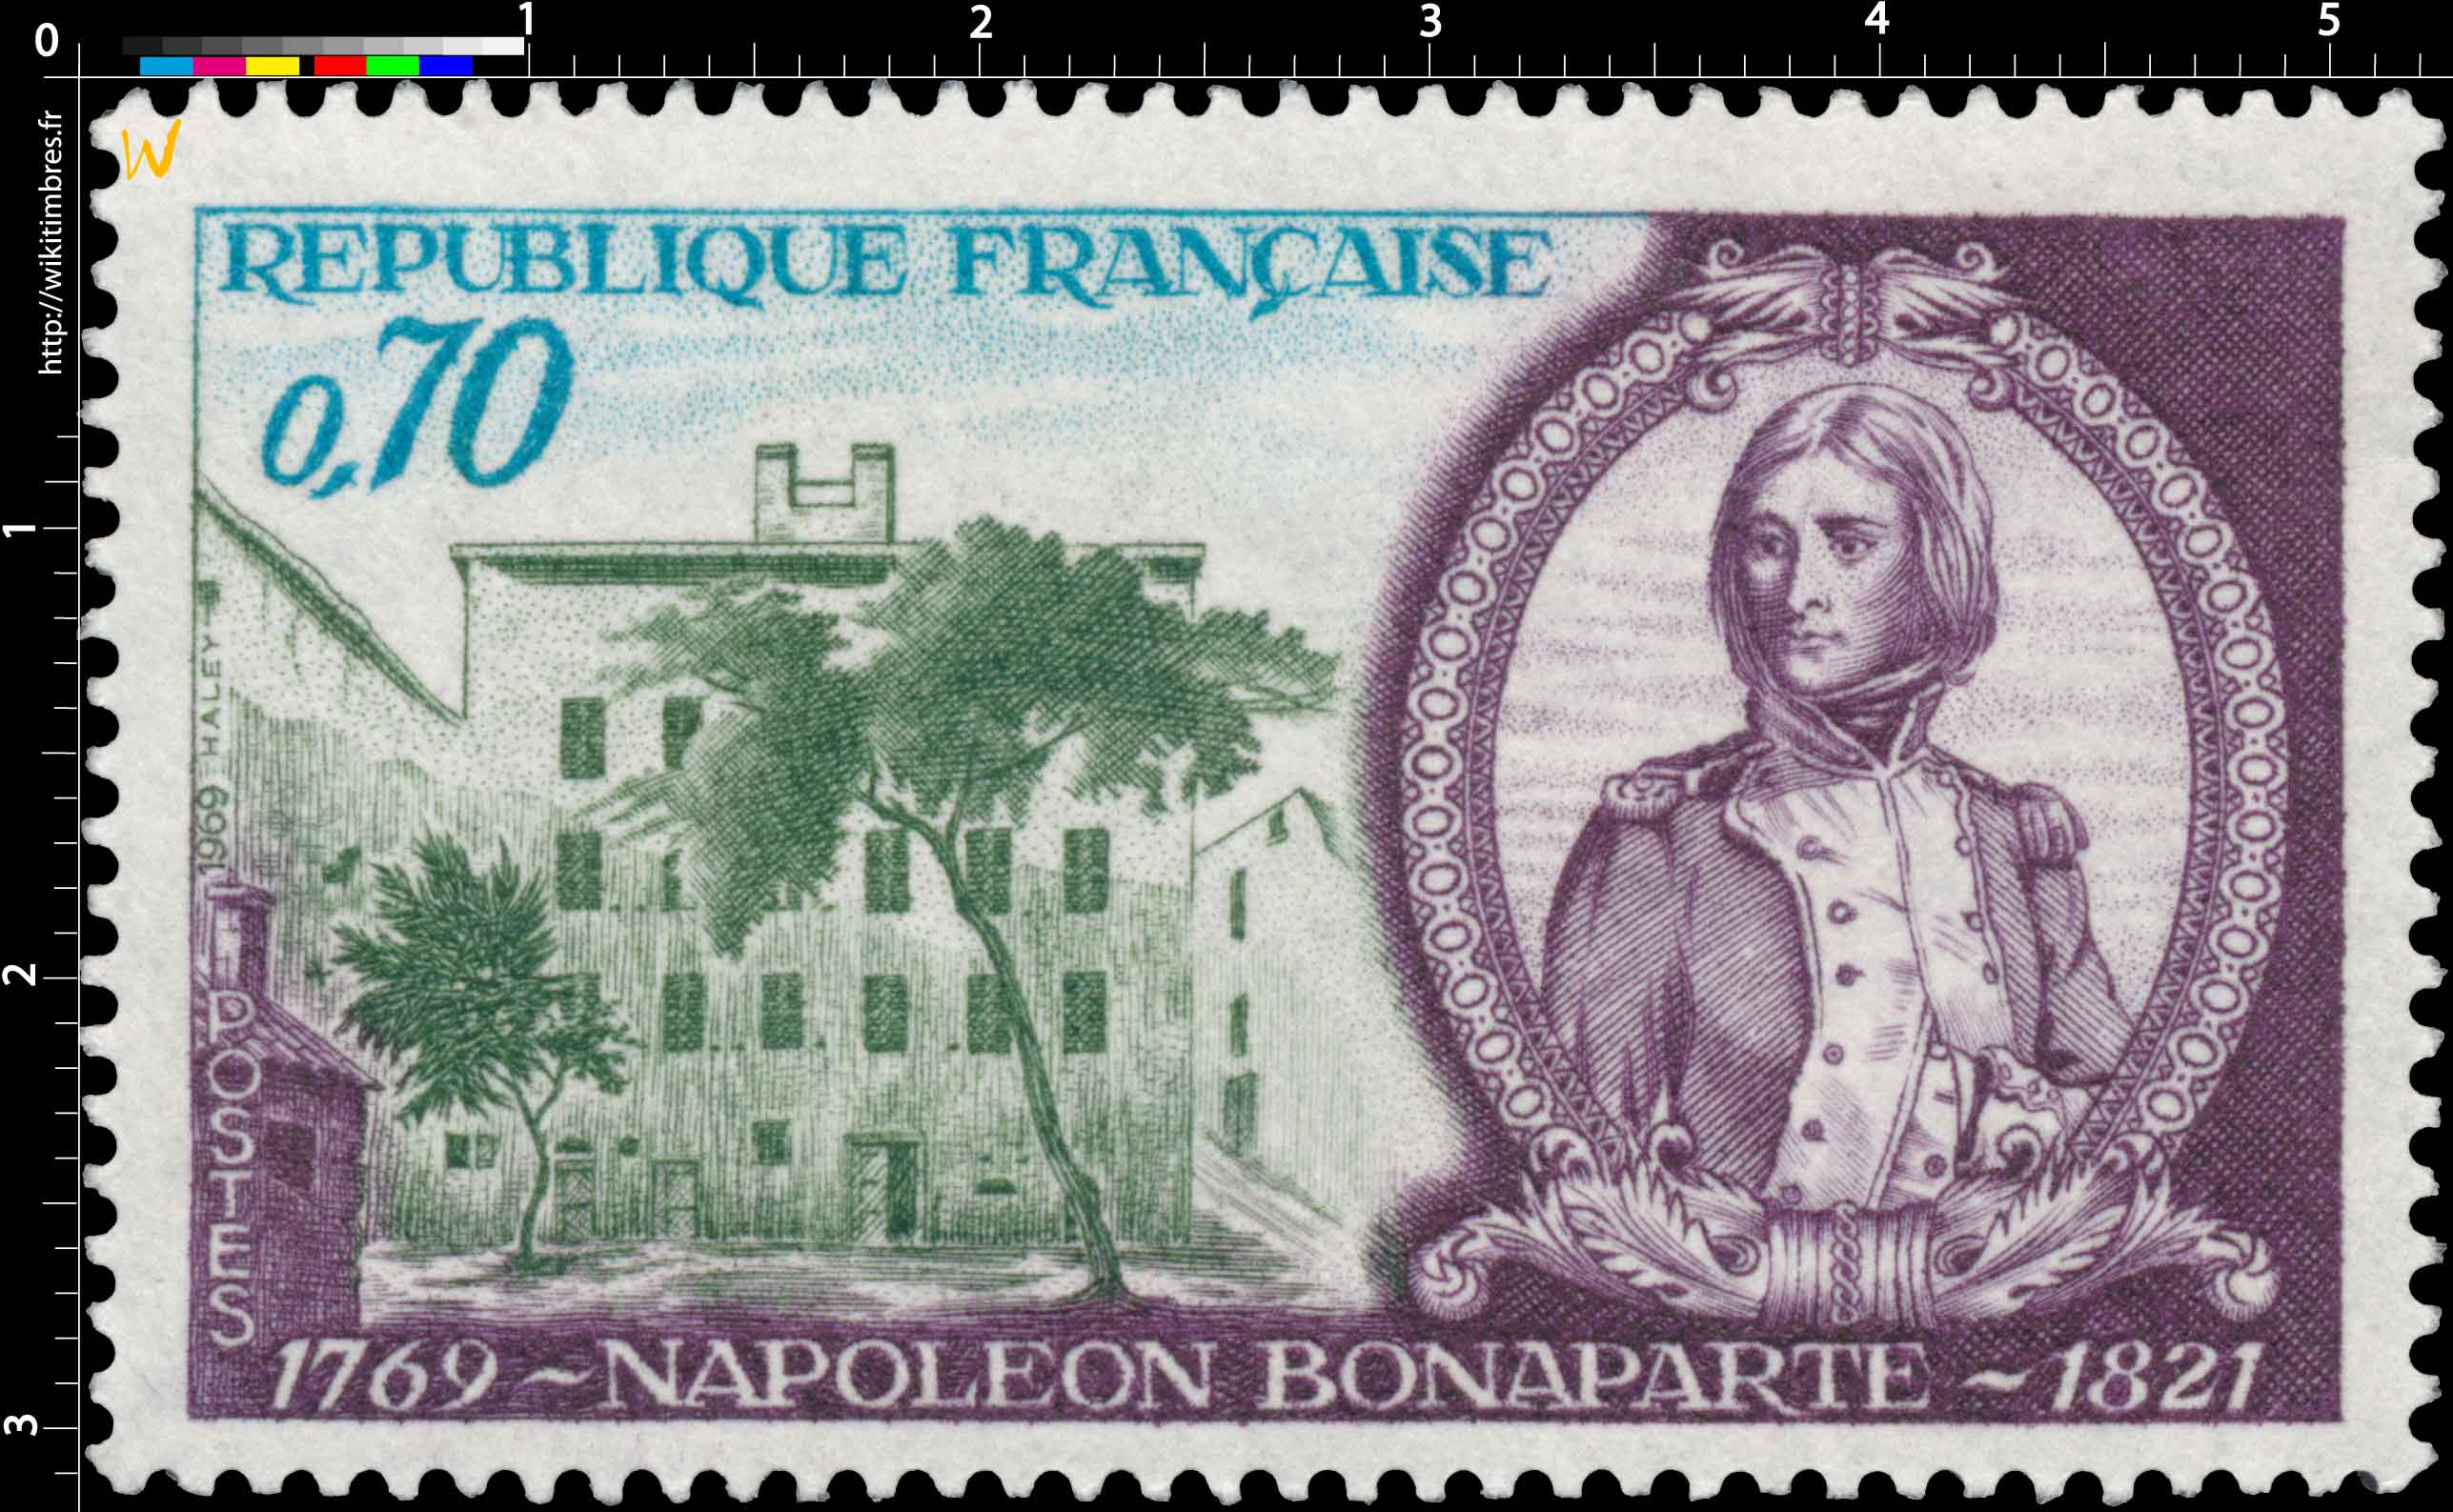 1969 NAPOLÉON BONAPARTE 1769-1821